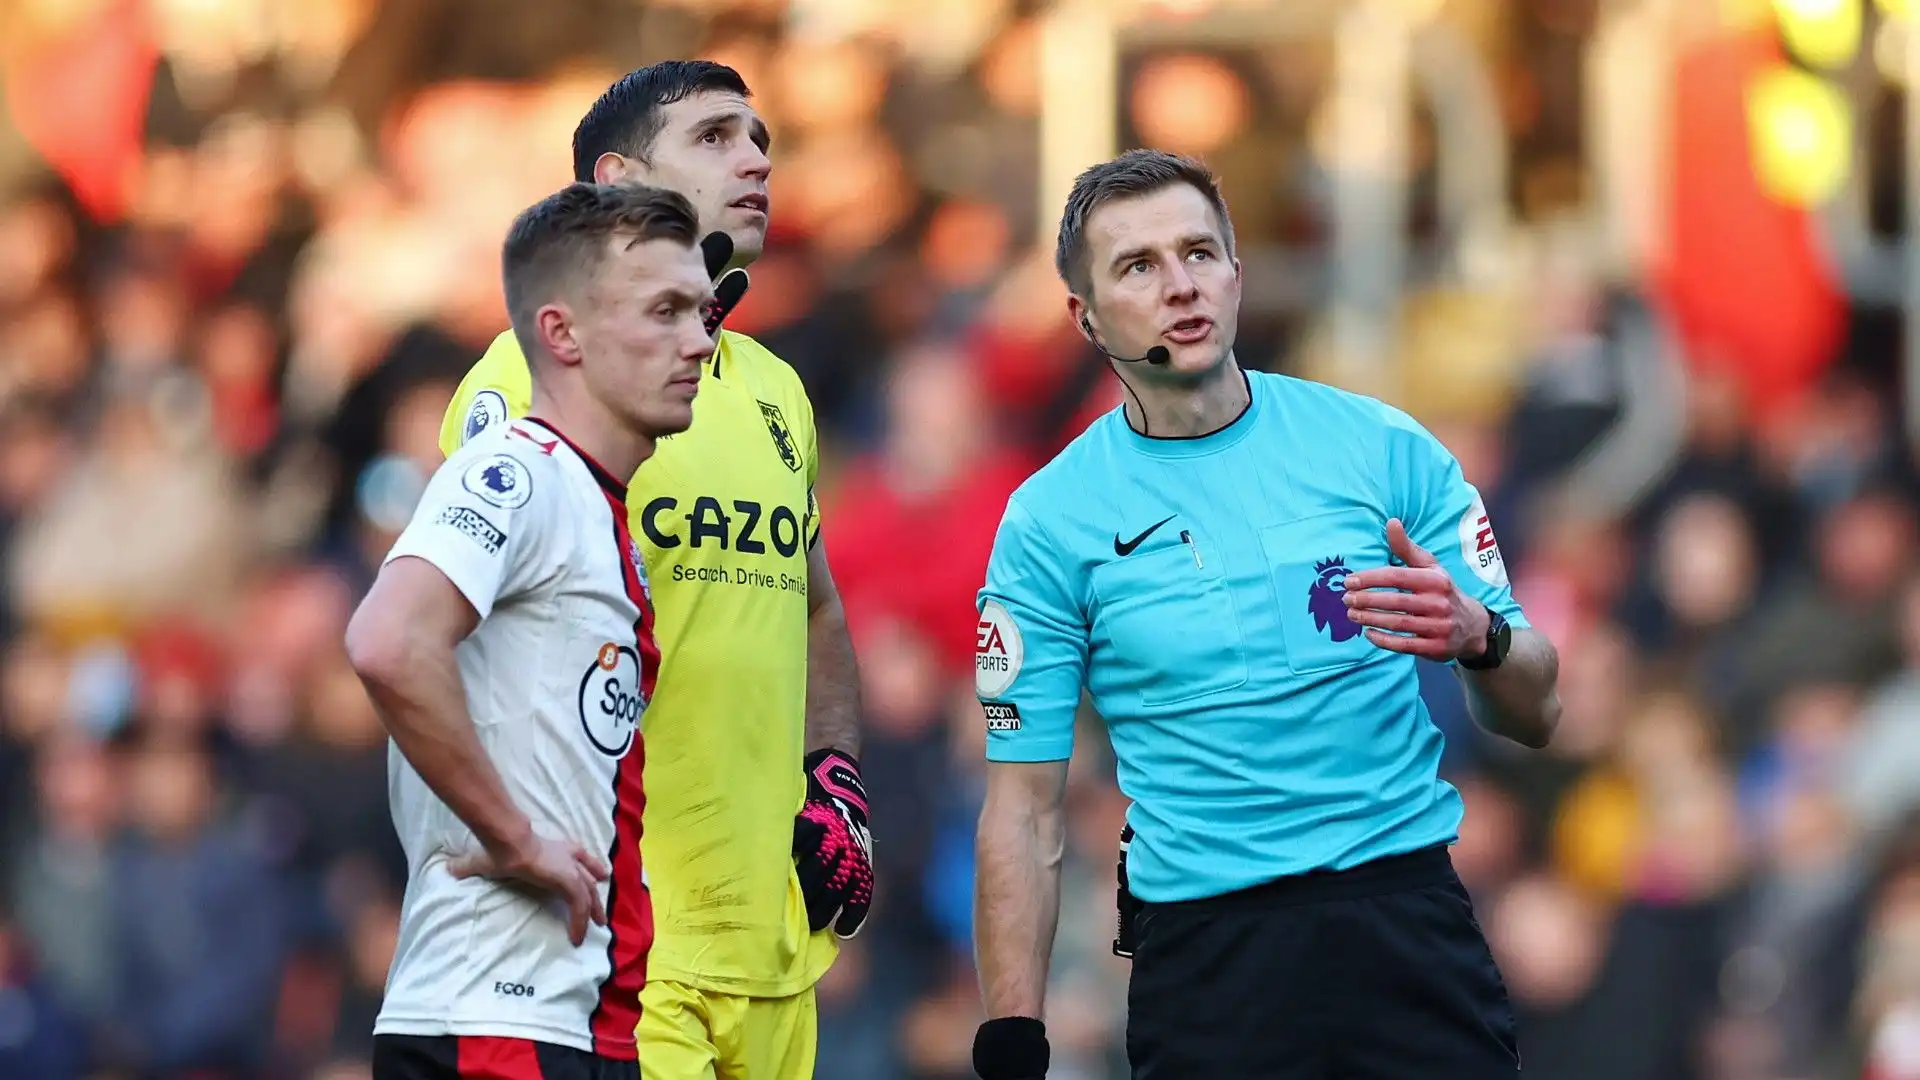 L'arbitro ha chiamato i capitani di Aston Villa e Southampton per comunicargli la sua decisione e ordinare ai compagni di abbandonare il campo di gioco